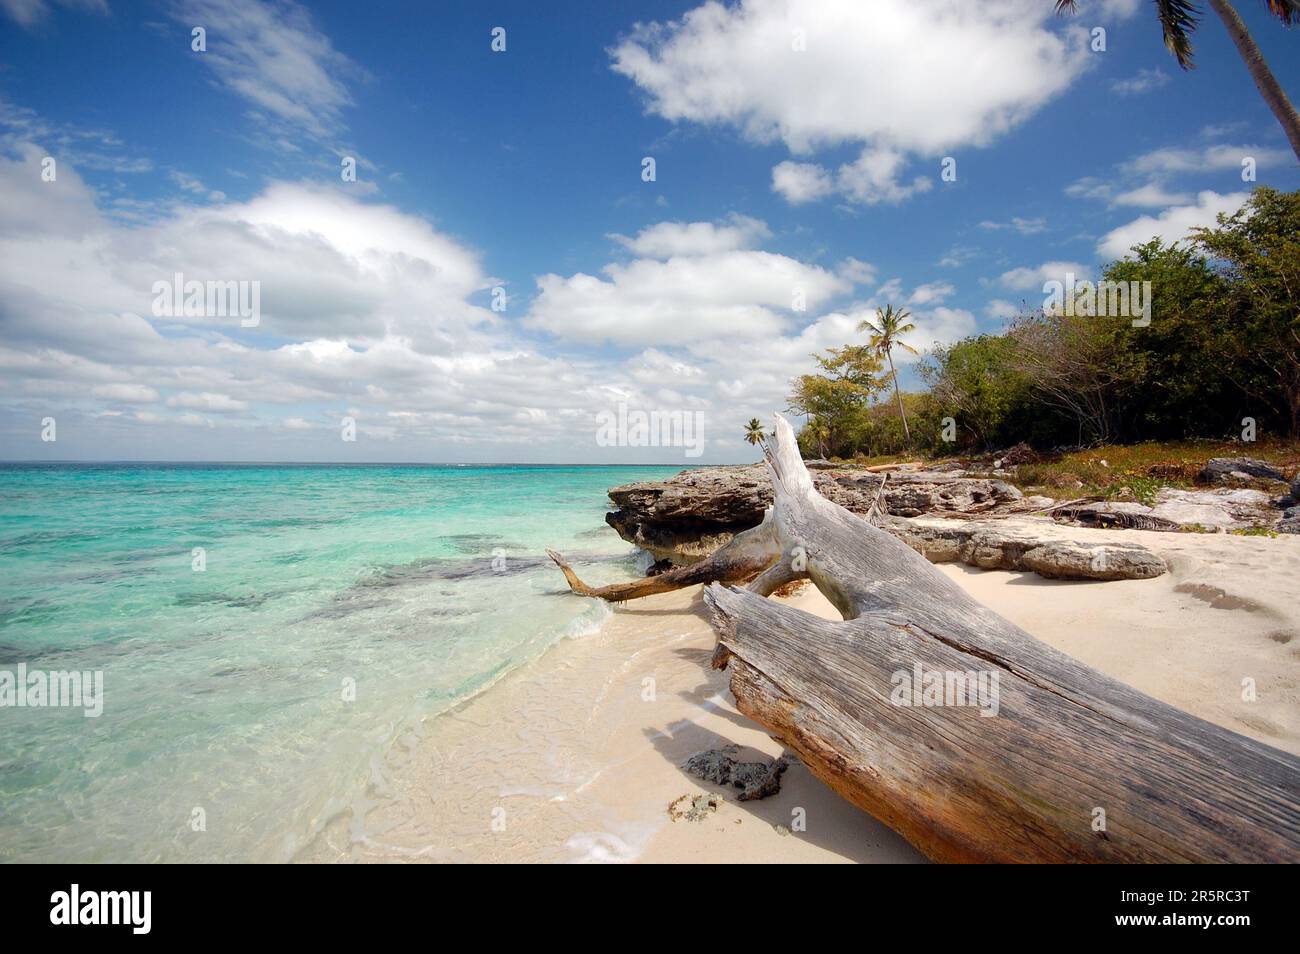 Une plage ensoleillée sans sargassum sur l'île de Saona en République dominicaine avec de l'eau bleue cristalline et du sable blanc Banque D'Images